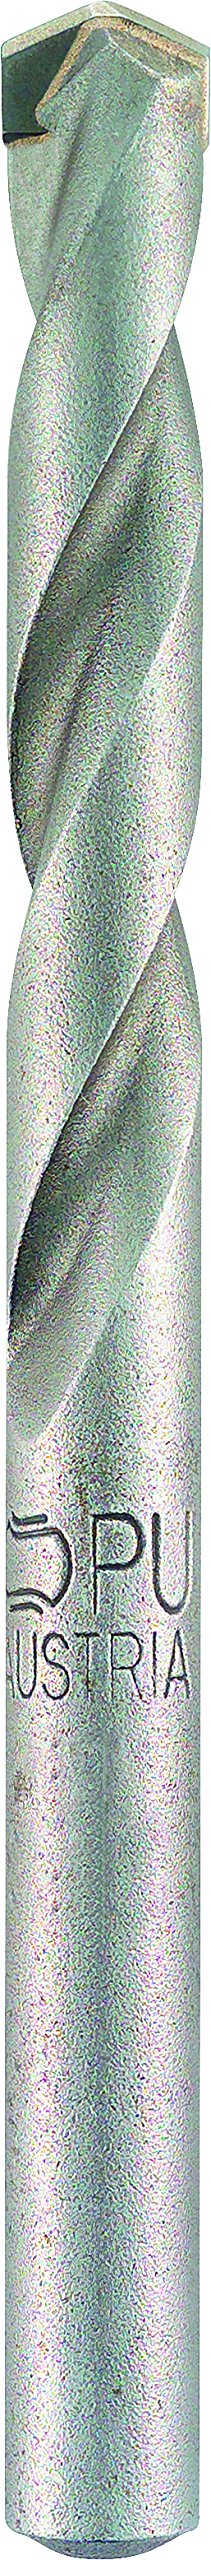 alpen Hartmetall-Steinbohrer Long Life, DIN ISO 5468, Durchmesser 16 mm, L1 600 mm, L2 500 mm, 61701600100